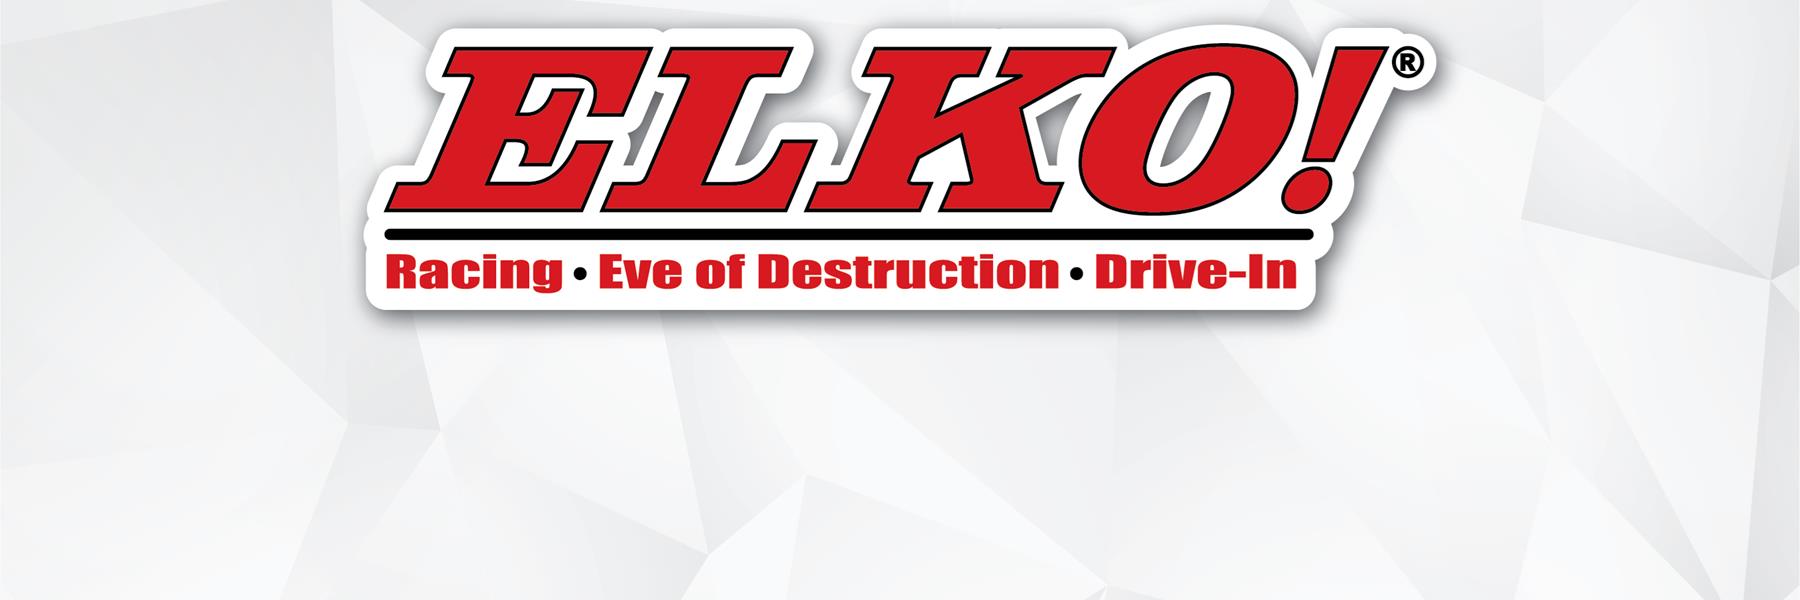 7/15/2011 - Elko Speedway